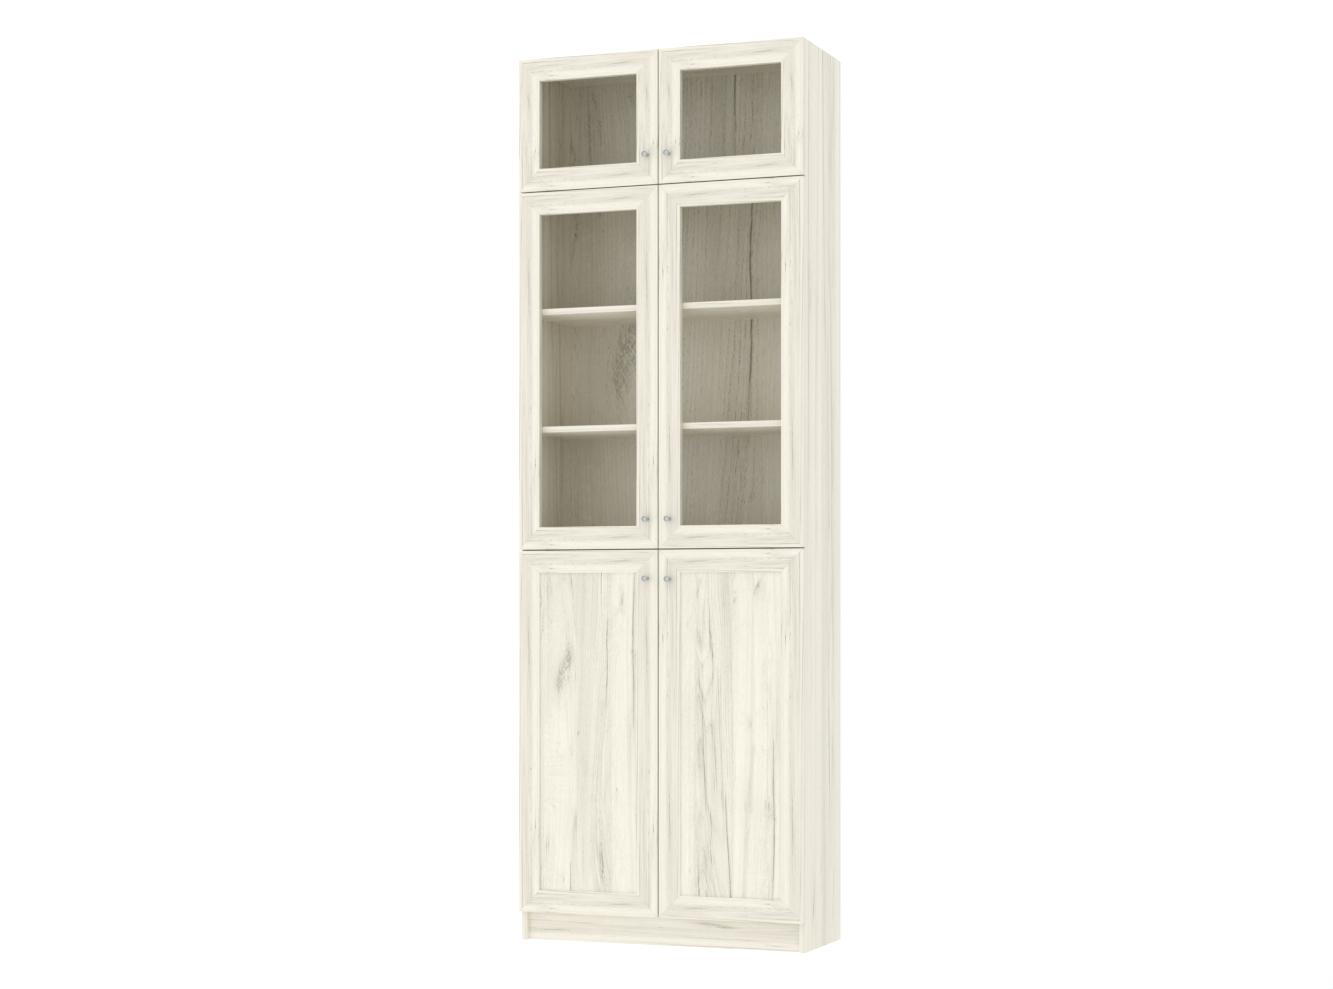  Книжный шкаф Билли 352 oak white craft ИКЕА (IKEA) изображение товара